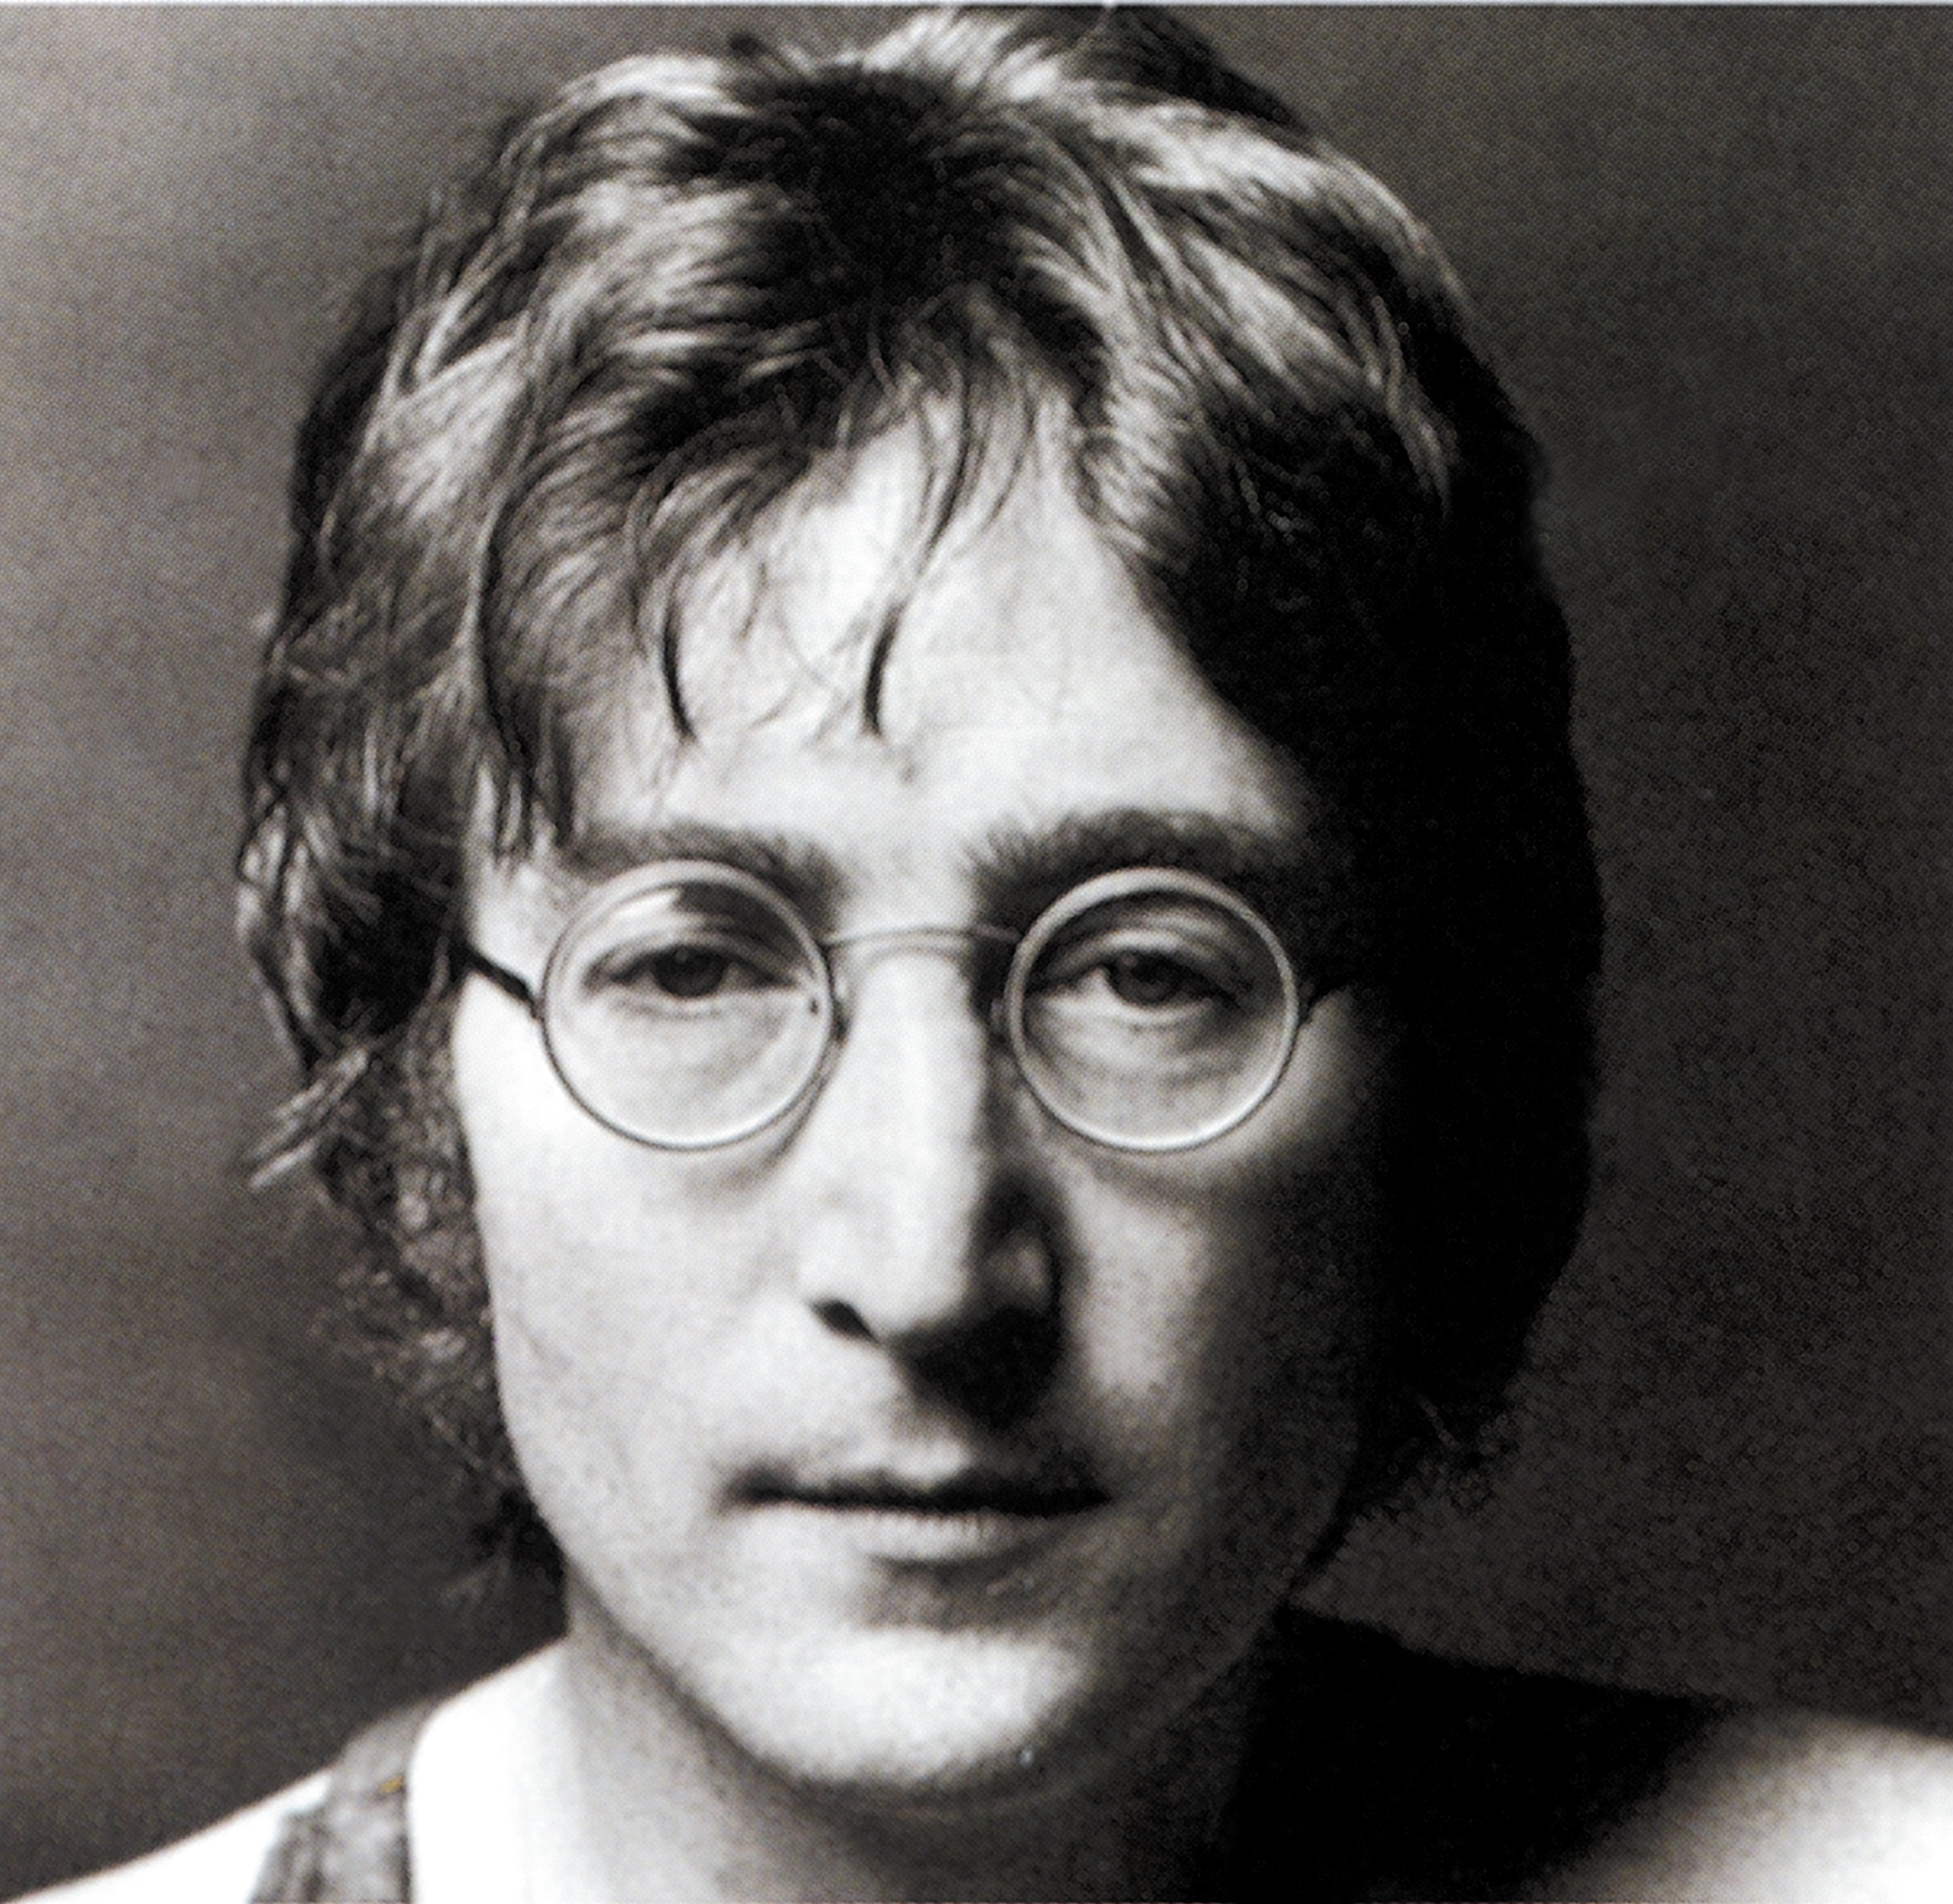 http://www.f-ikusei.or.jp/archive/leader/John-Lennon1.jpg